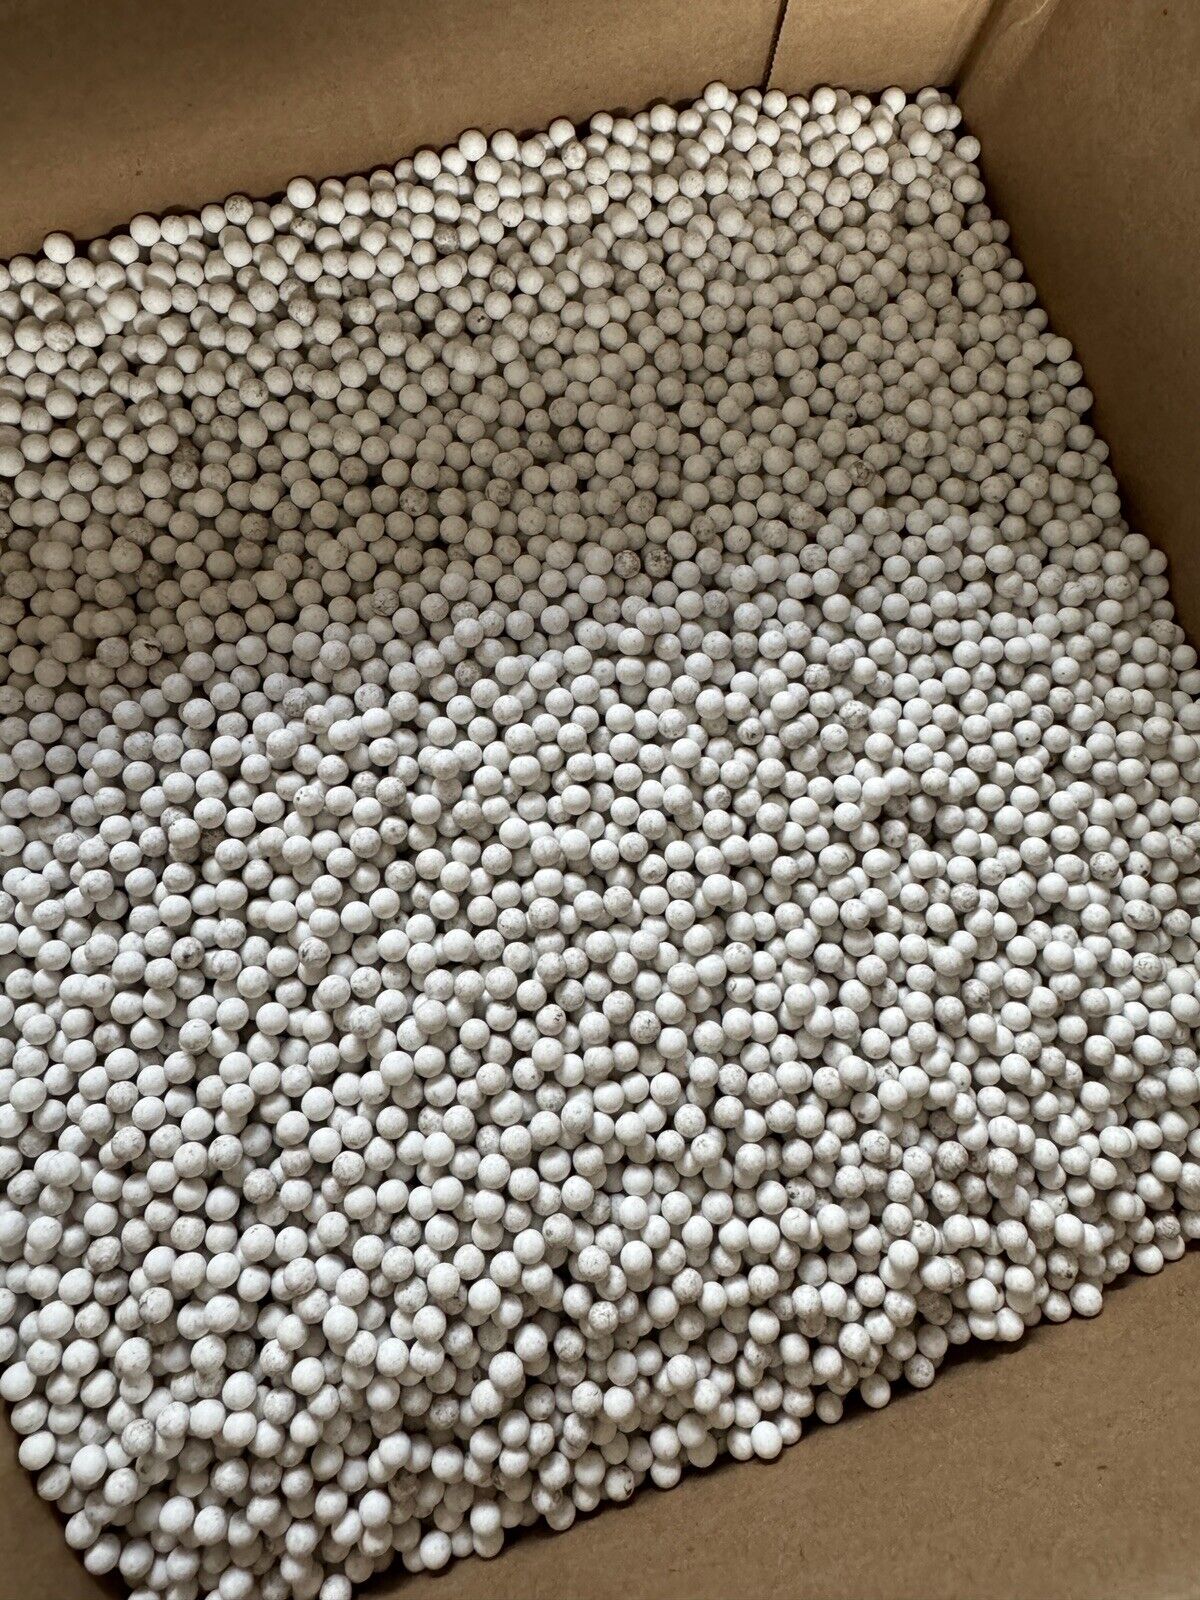 Ceramic Tumbler  Beads.   25 Pounds